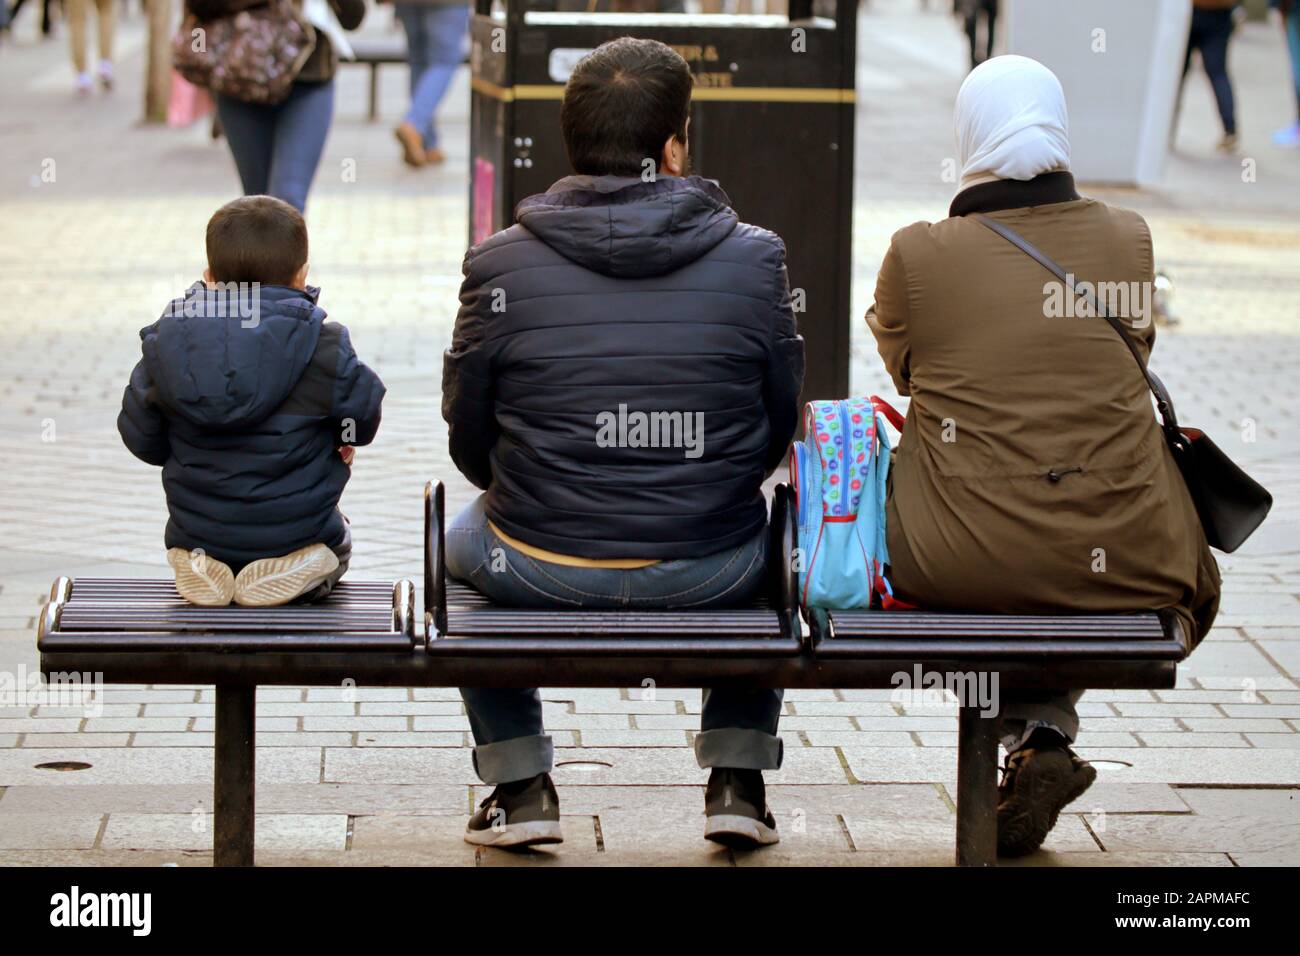 Étrangers, immigrants ou demandeurs d'asile dans les rues du Royaume-Uni. Famille avec enfant assis sur banc Banque D'Images